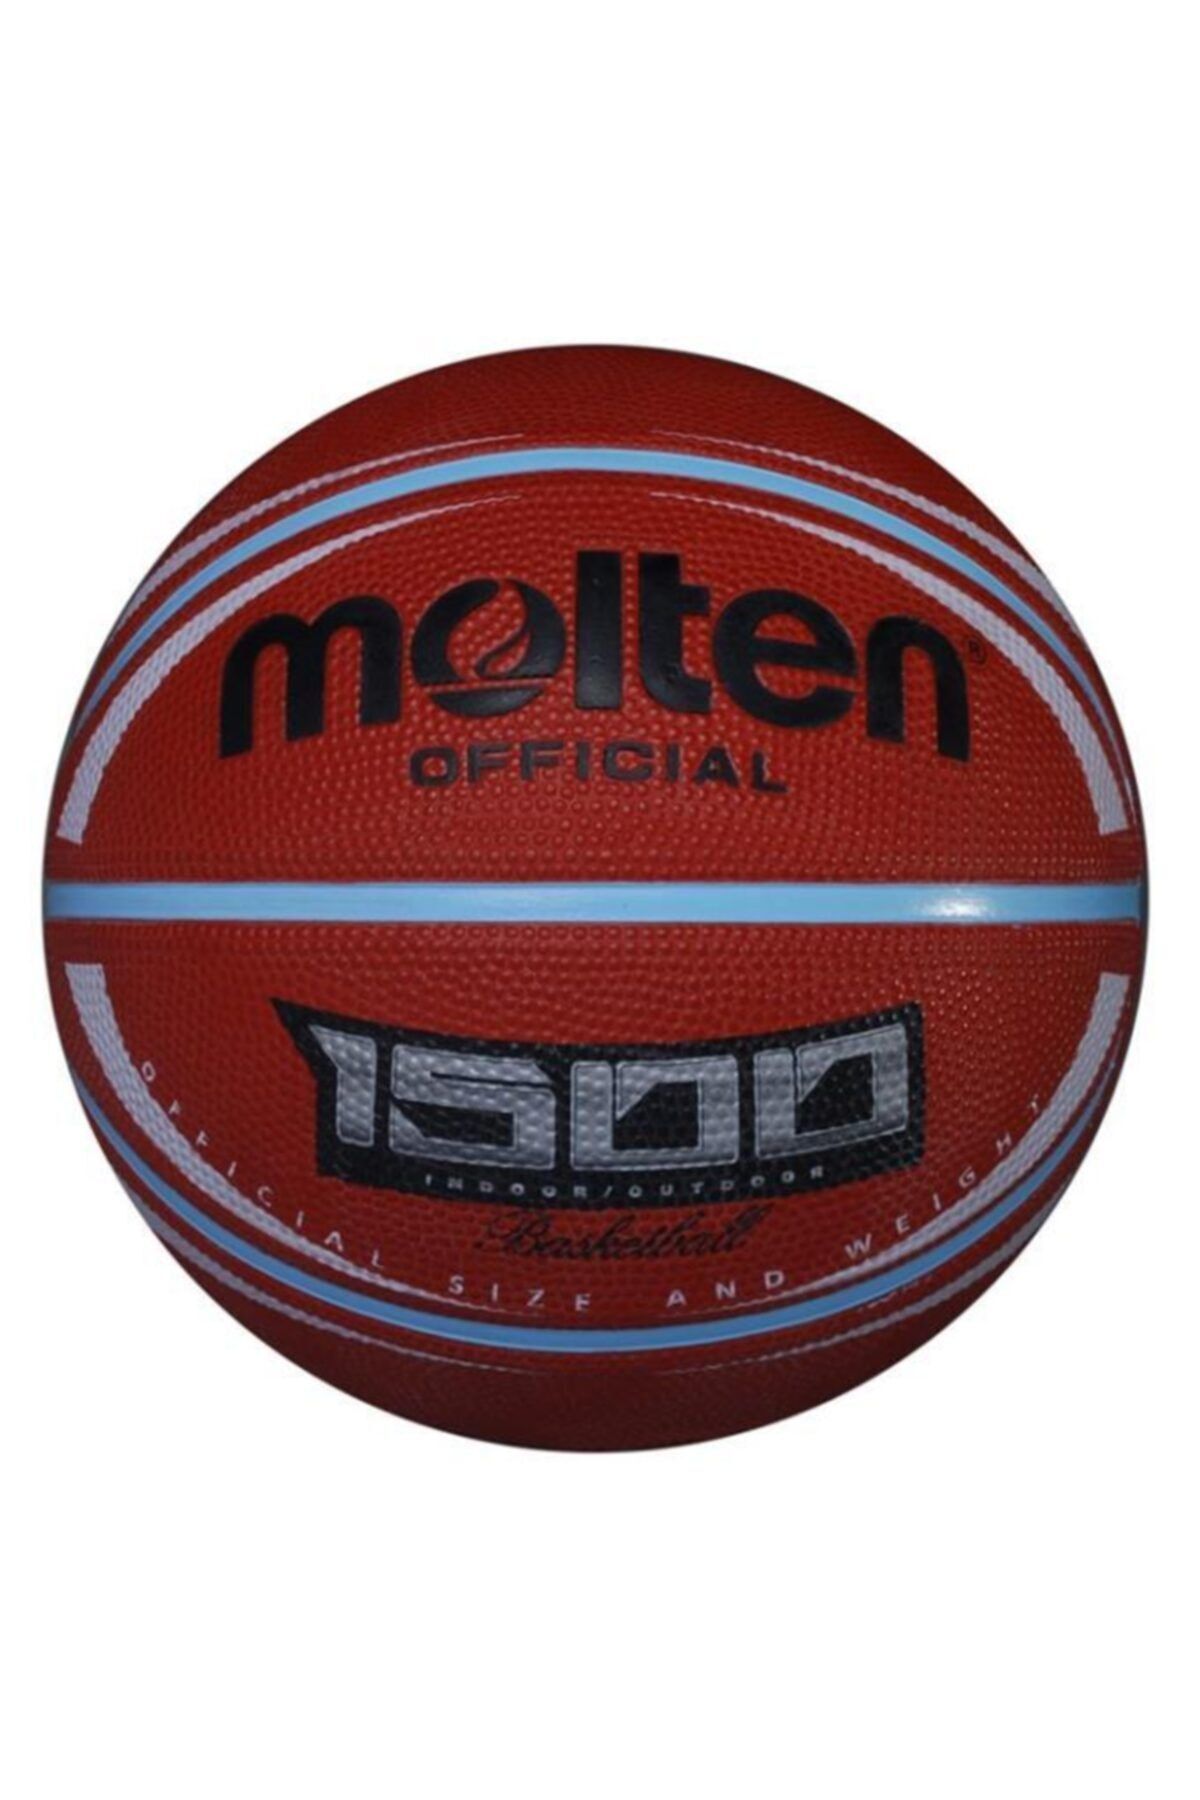 Molten B7Rd-1500 No:7 Numara Kauçuk Basketbol Topu